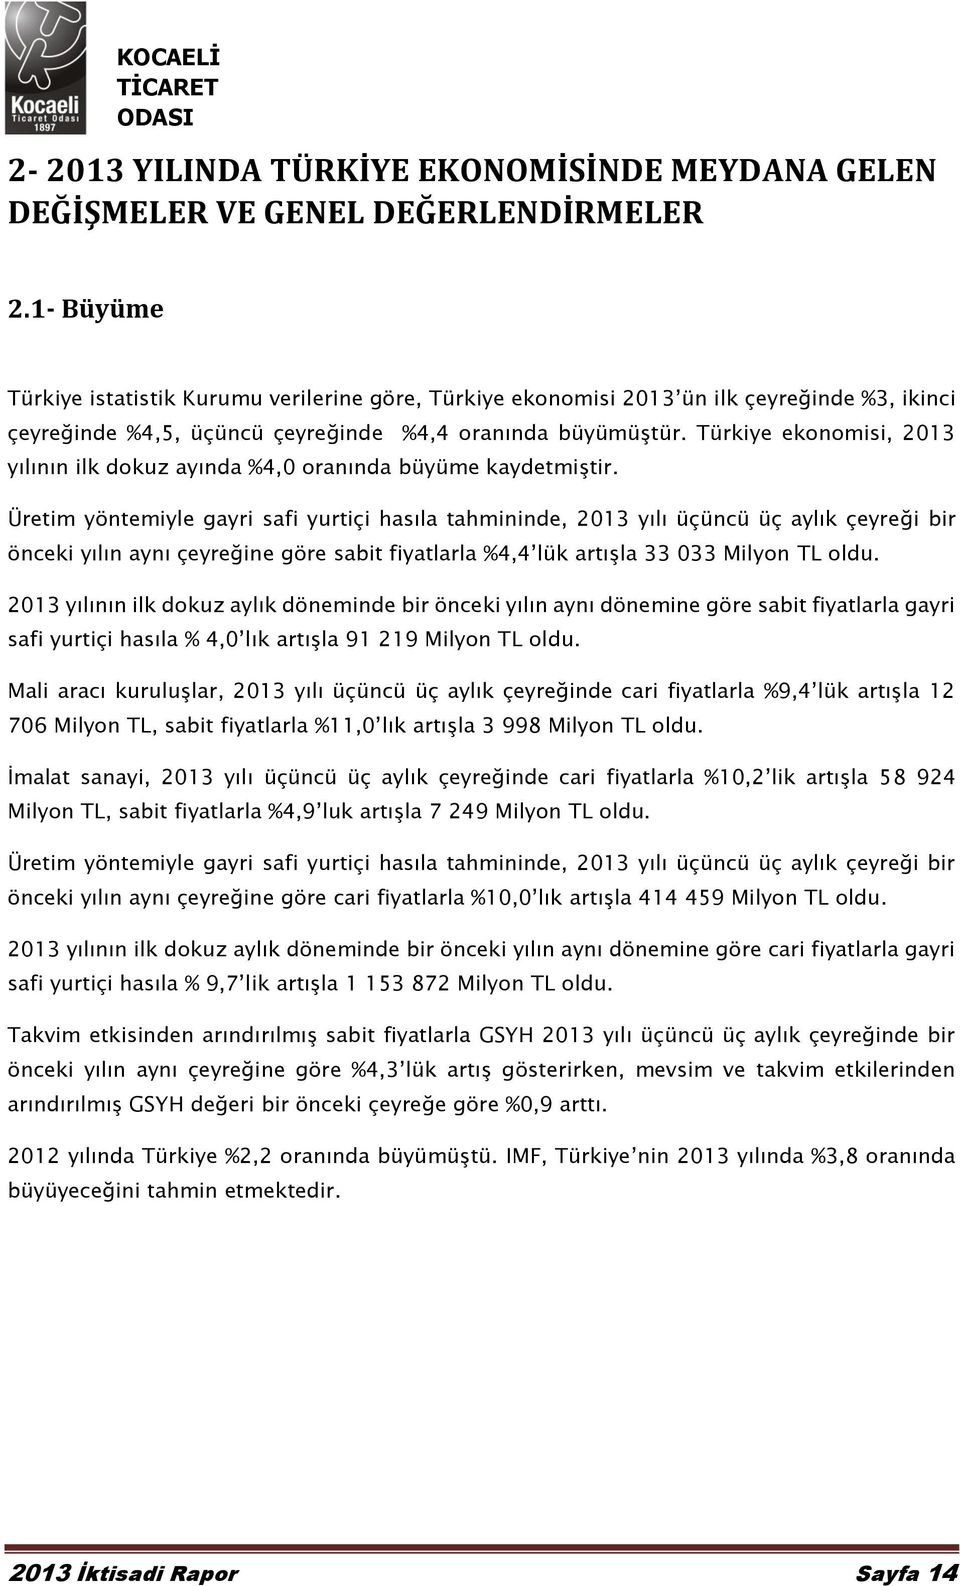 Türkiye ekonomisi, 2013 yılının ilk dokuz ayında %4,0 oranında büyüme kaydetmiştir.